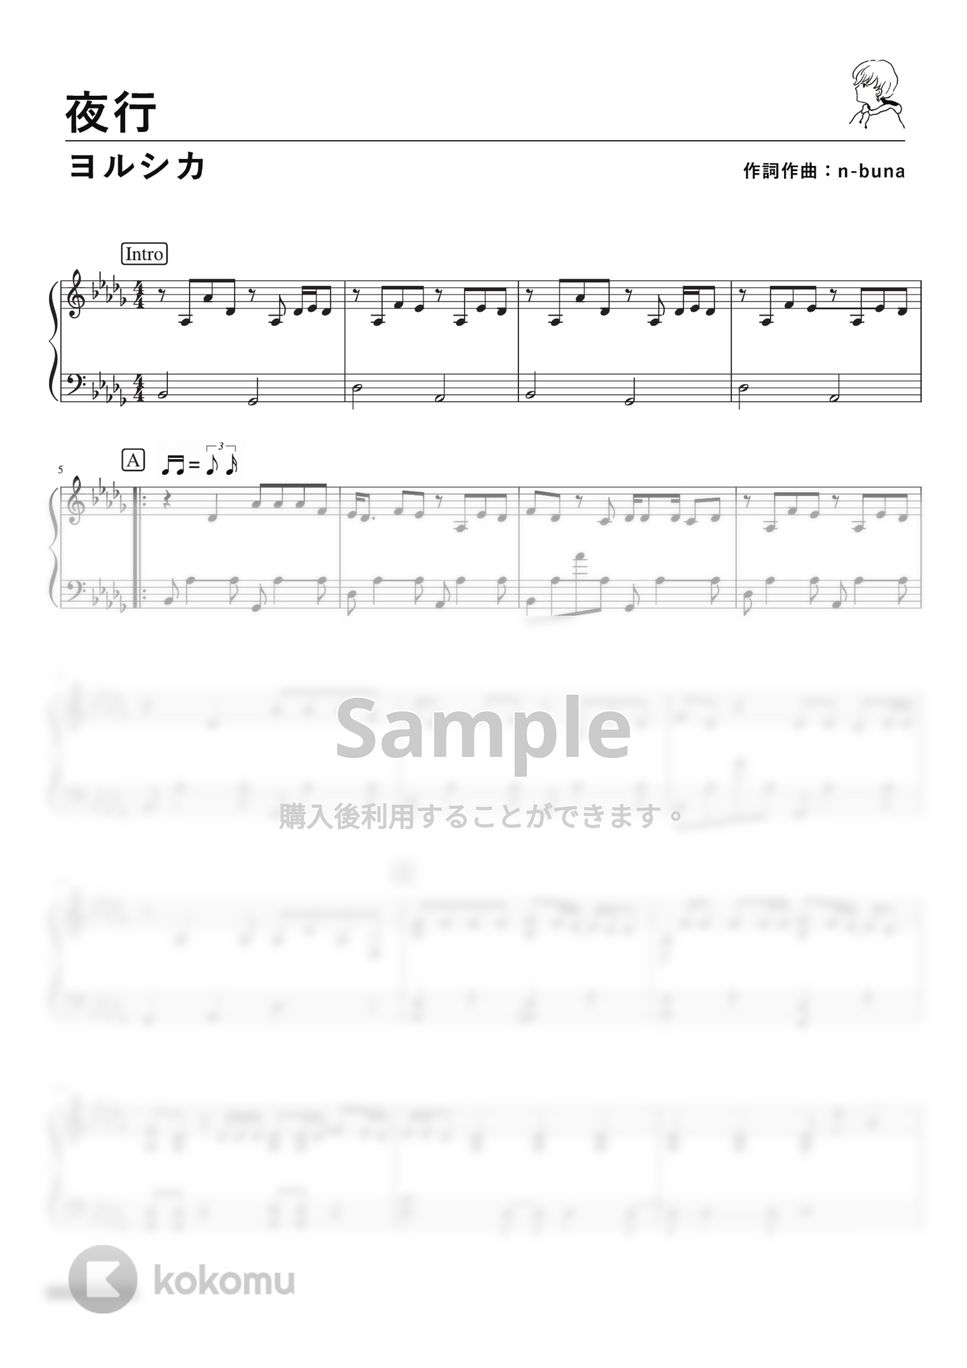 ヨルシカ - 夜行 (PianoSolo) by 深根 / Fukane